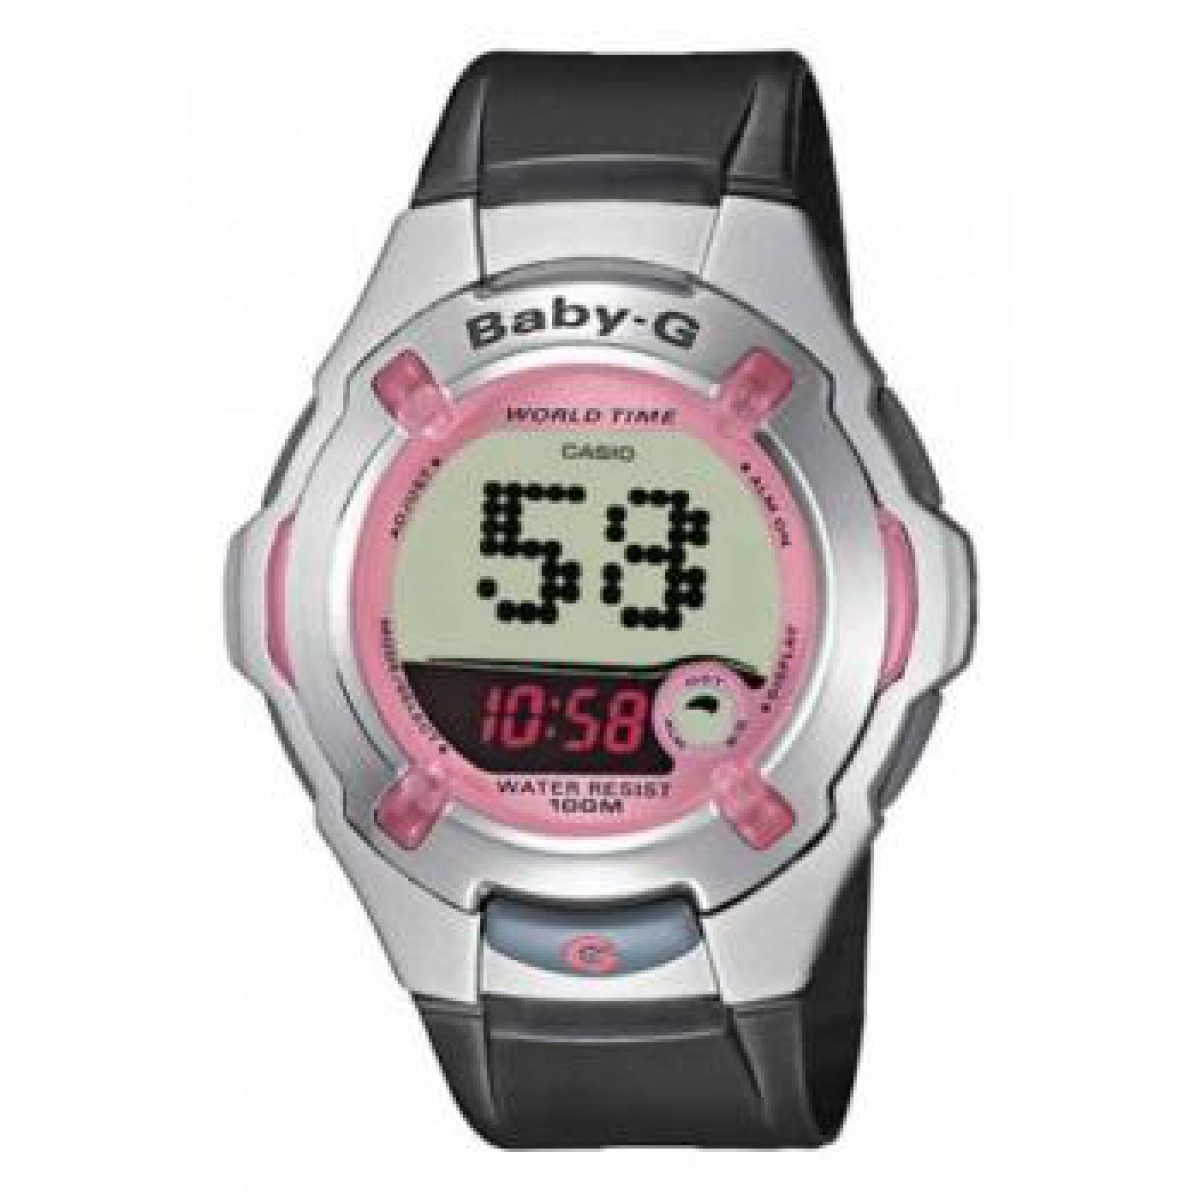 Casio baby-g watch 